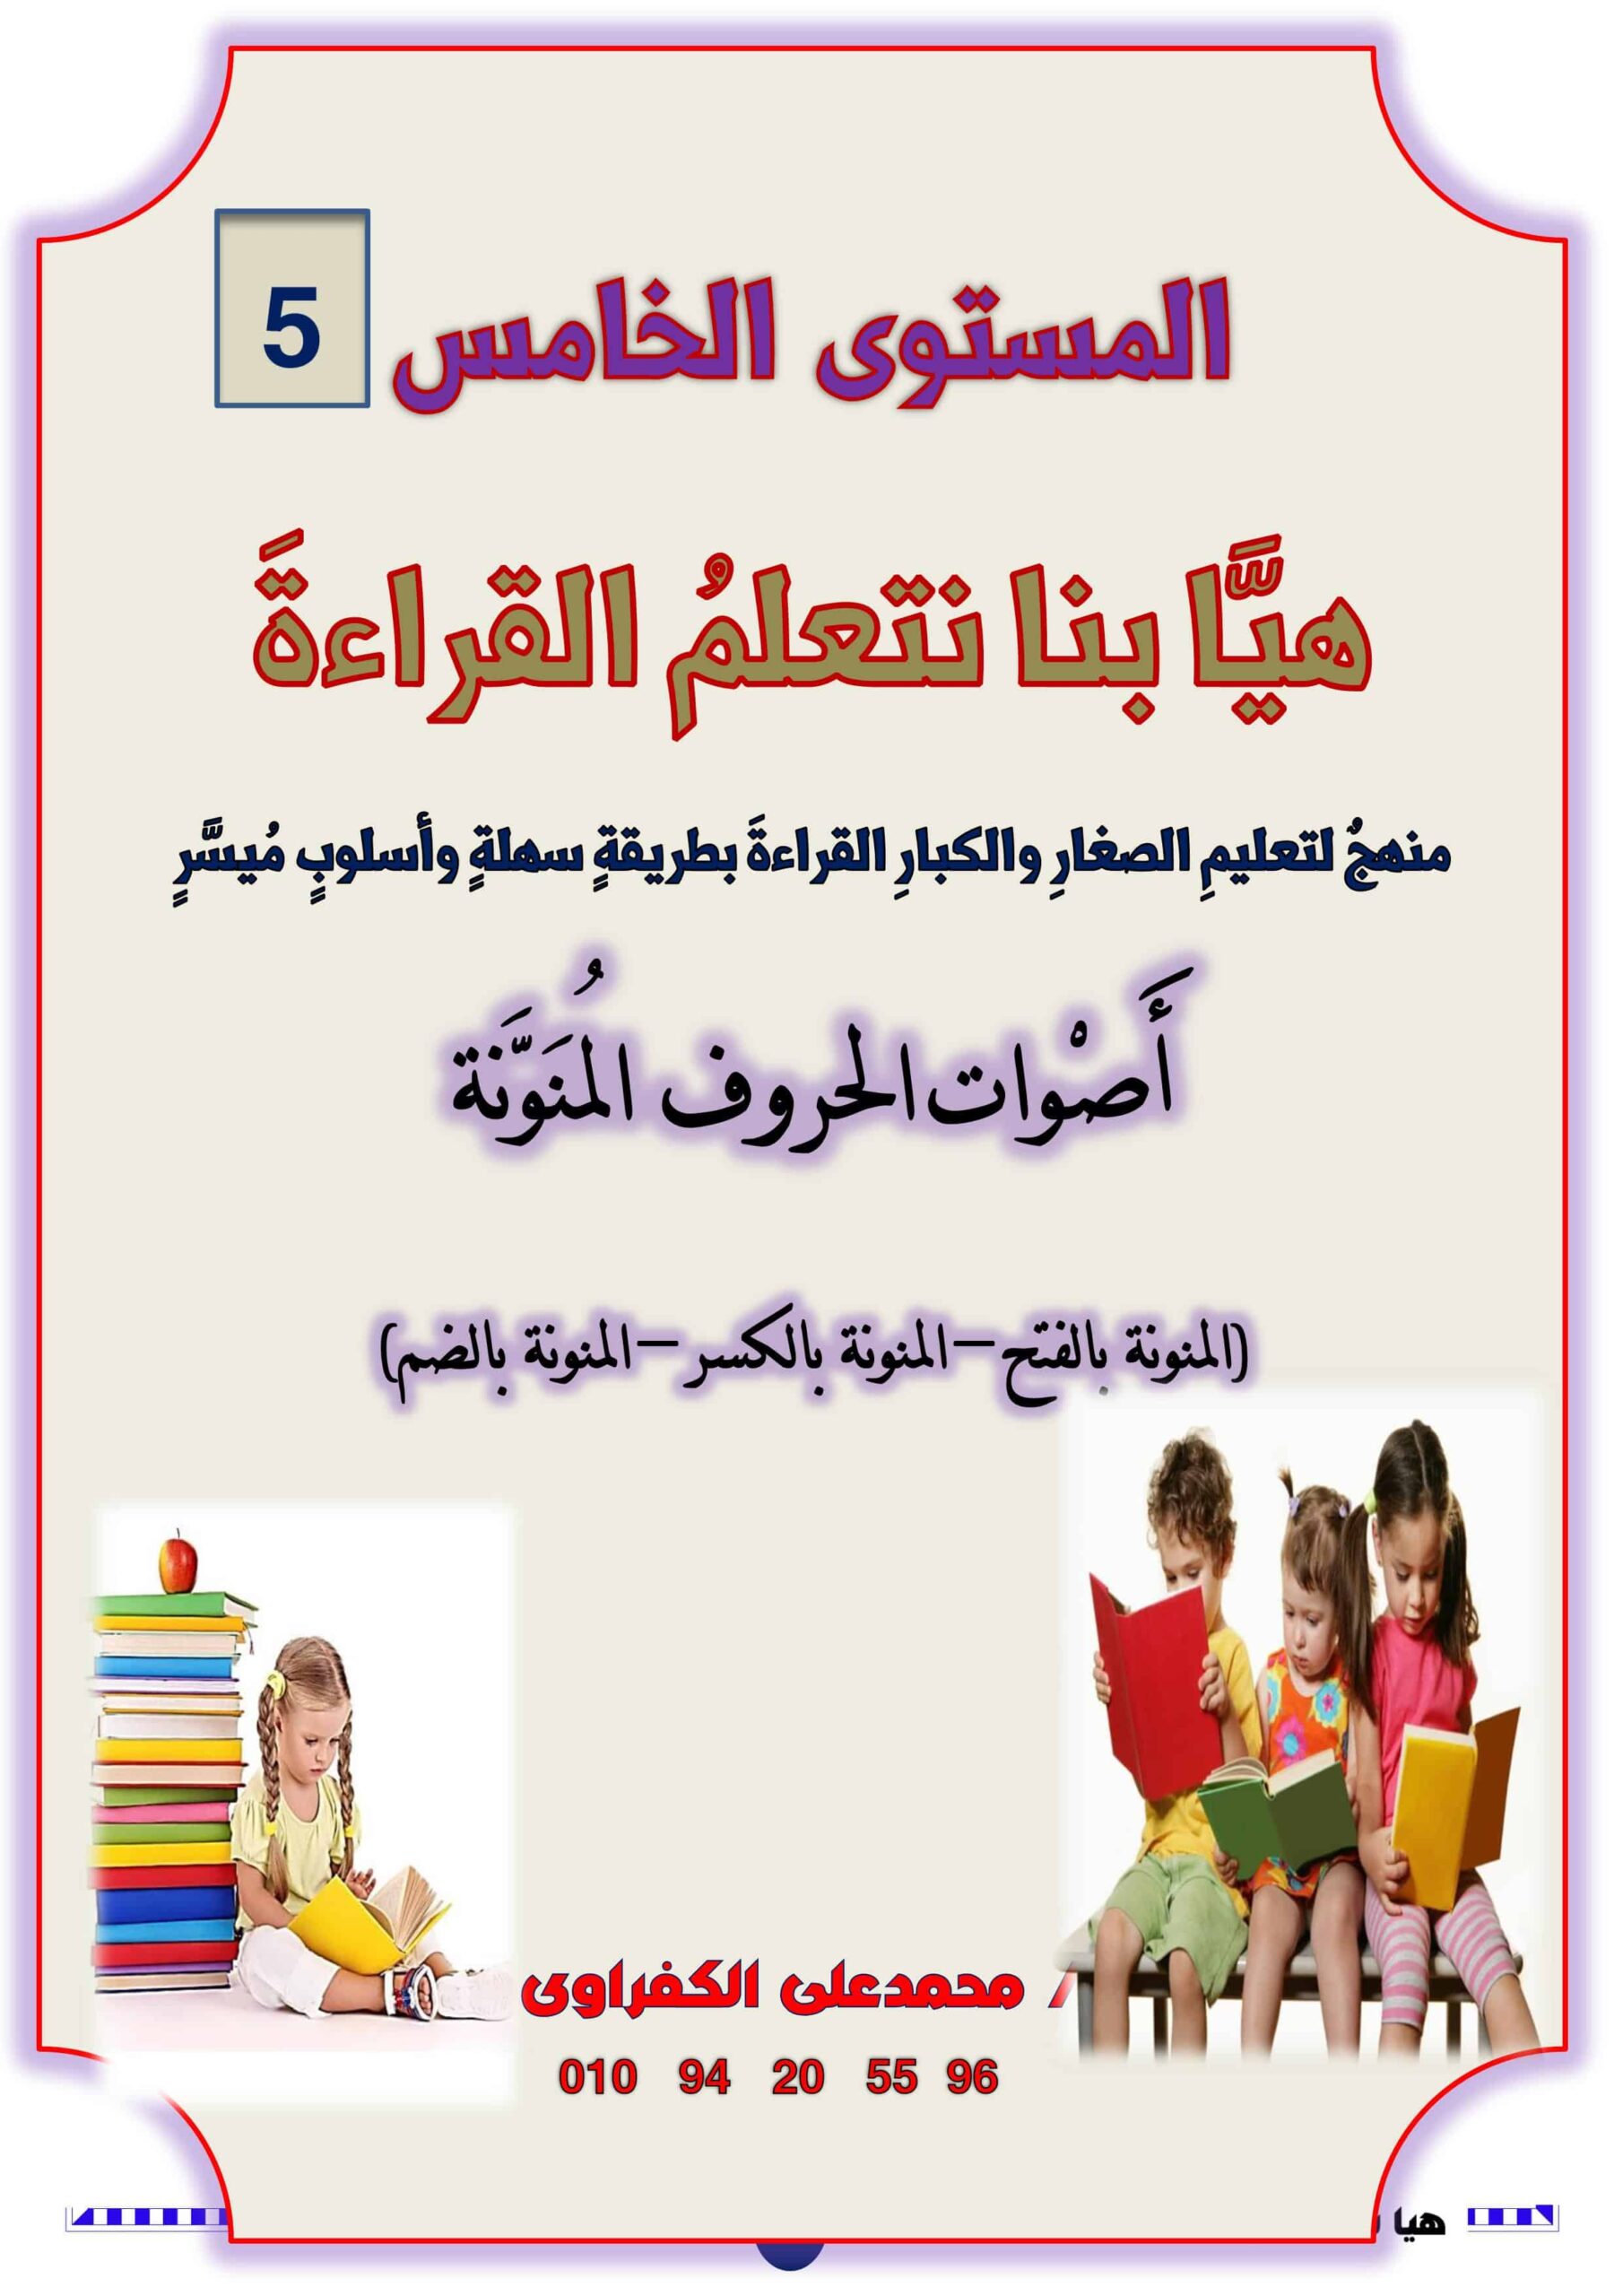 مذكرة هيا بنا نتعلم القراءة المستوى الخامس اللغة العربية الصف الأول